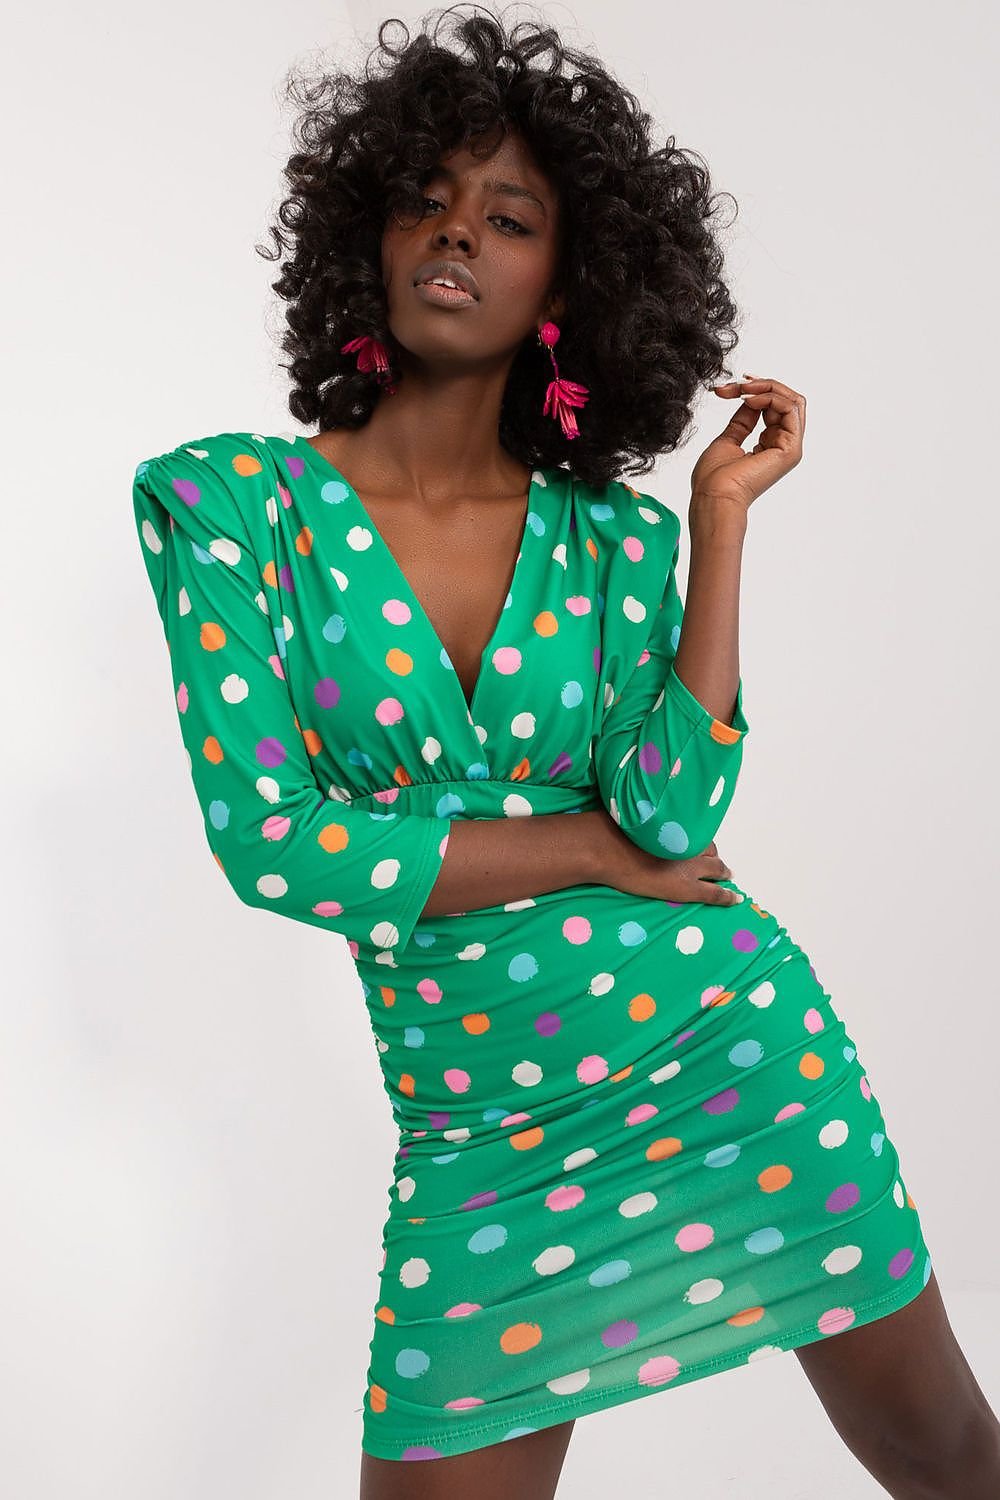 TEEK - Poked Shoulder Polka-Dot Dress DRESS TEEK MH green One Size 